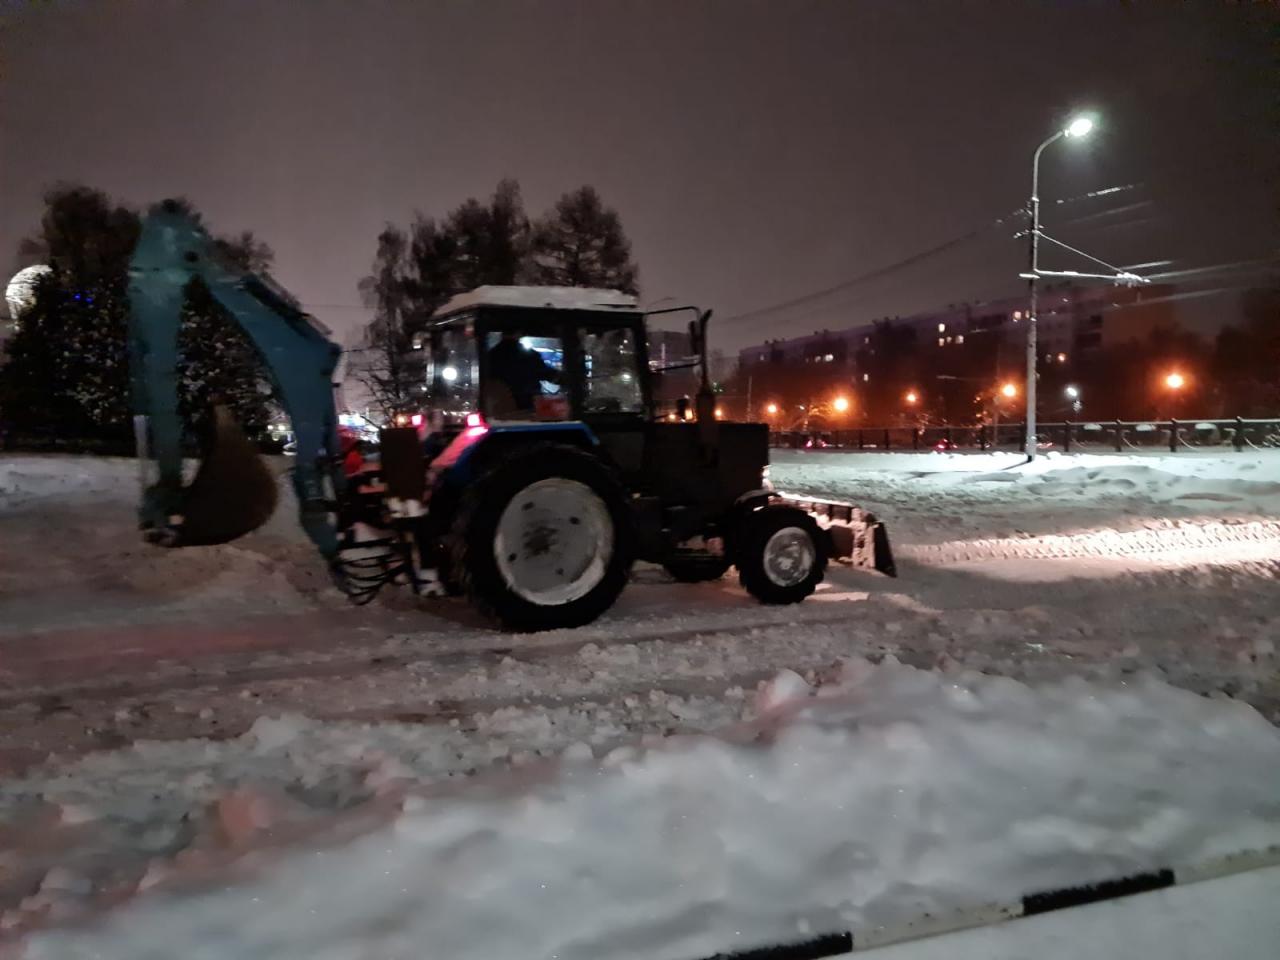 МКУ "УДТ города Рязани" проводятся работы по расчистке снега 12.01.2022